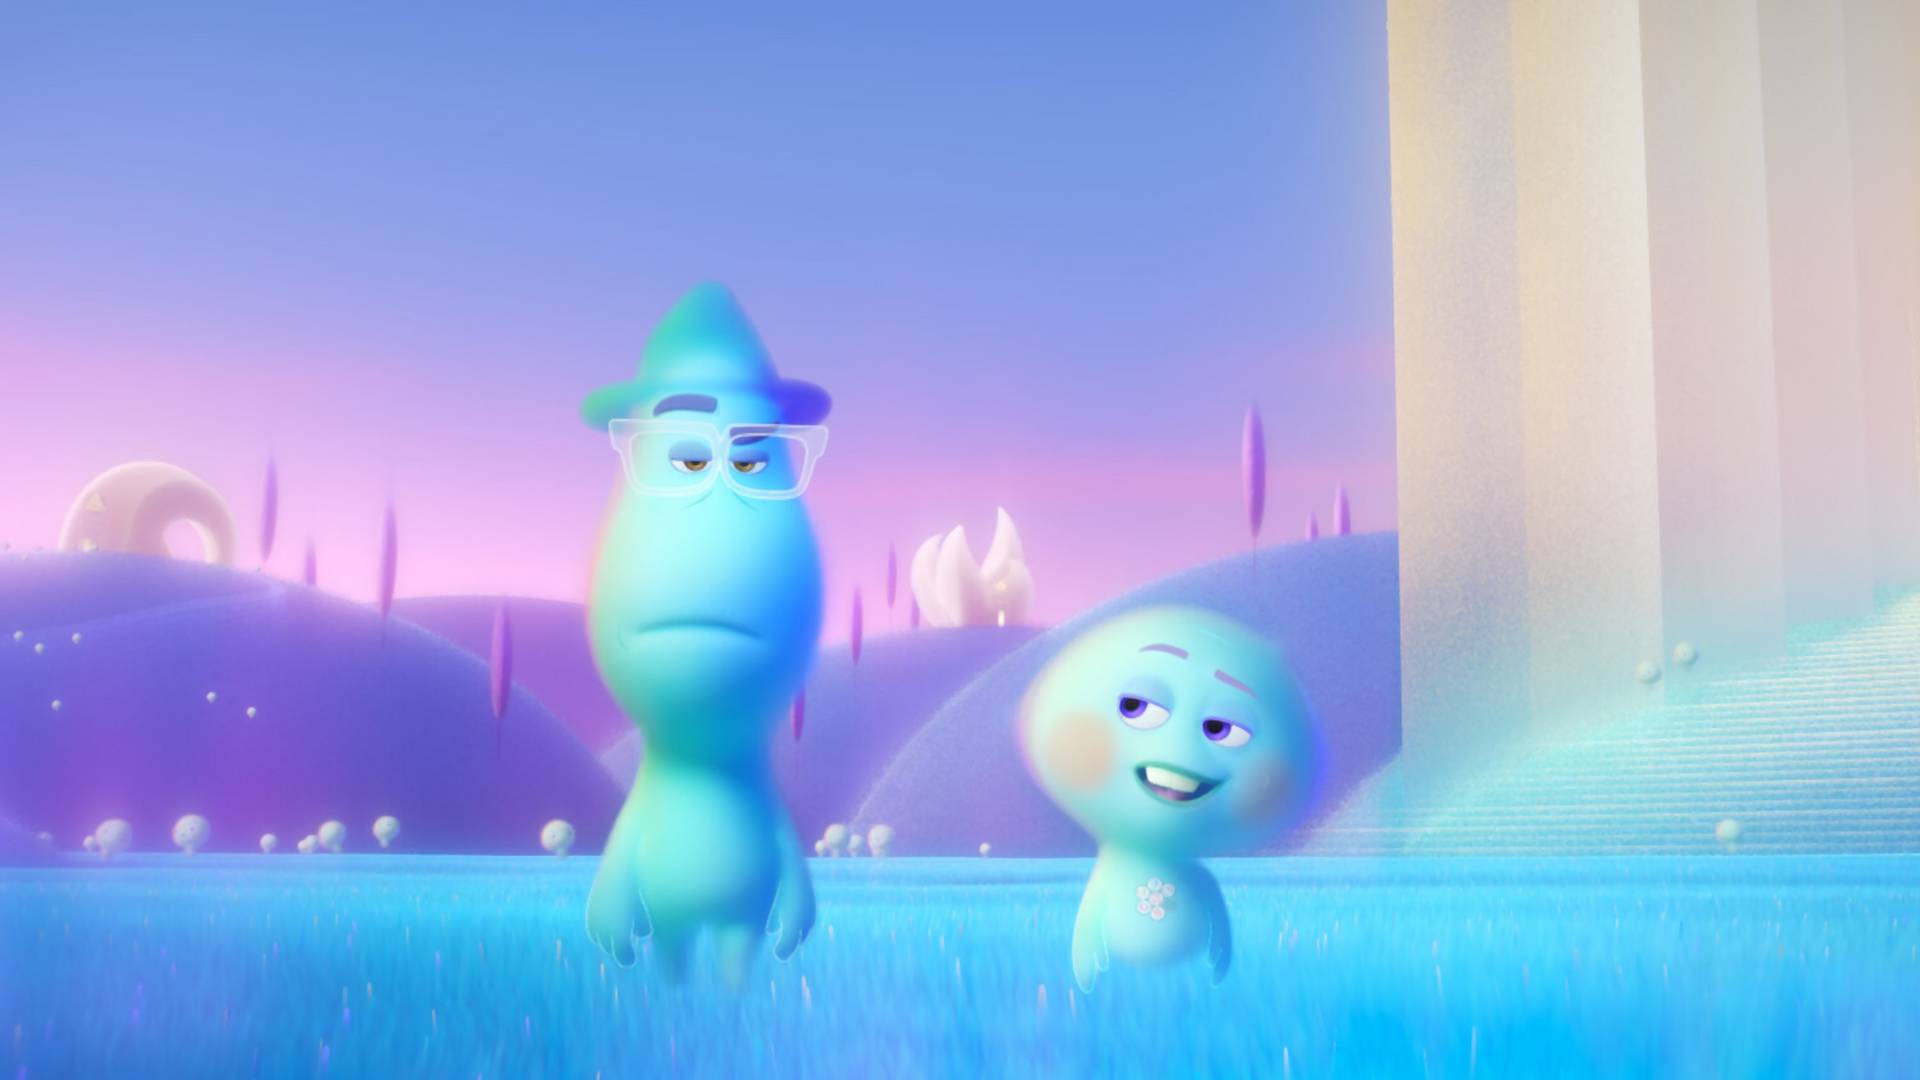 Nem gyerekeknek való: ismét a lelkünk legmélyéig hatolt a Pixar - Soul kritika